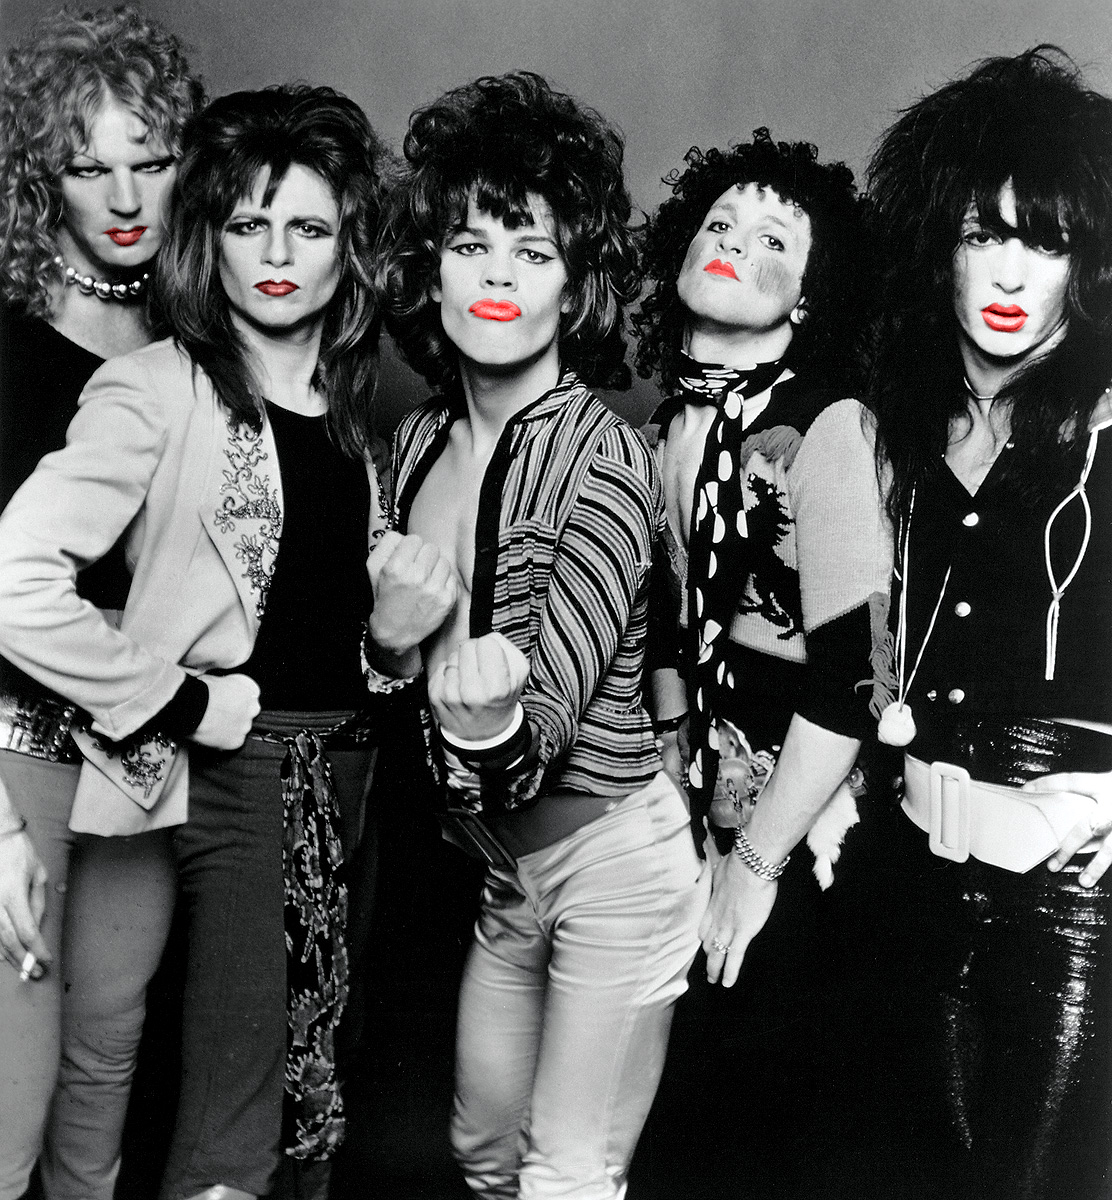 New York Dolls Album cover lipstick johnny thunders glam rock johansen